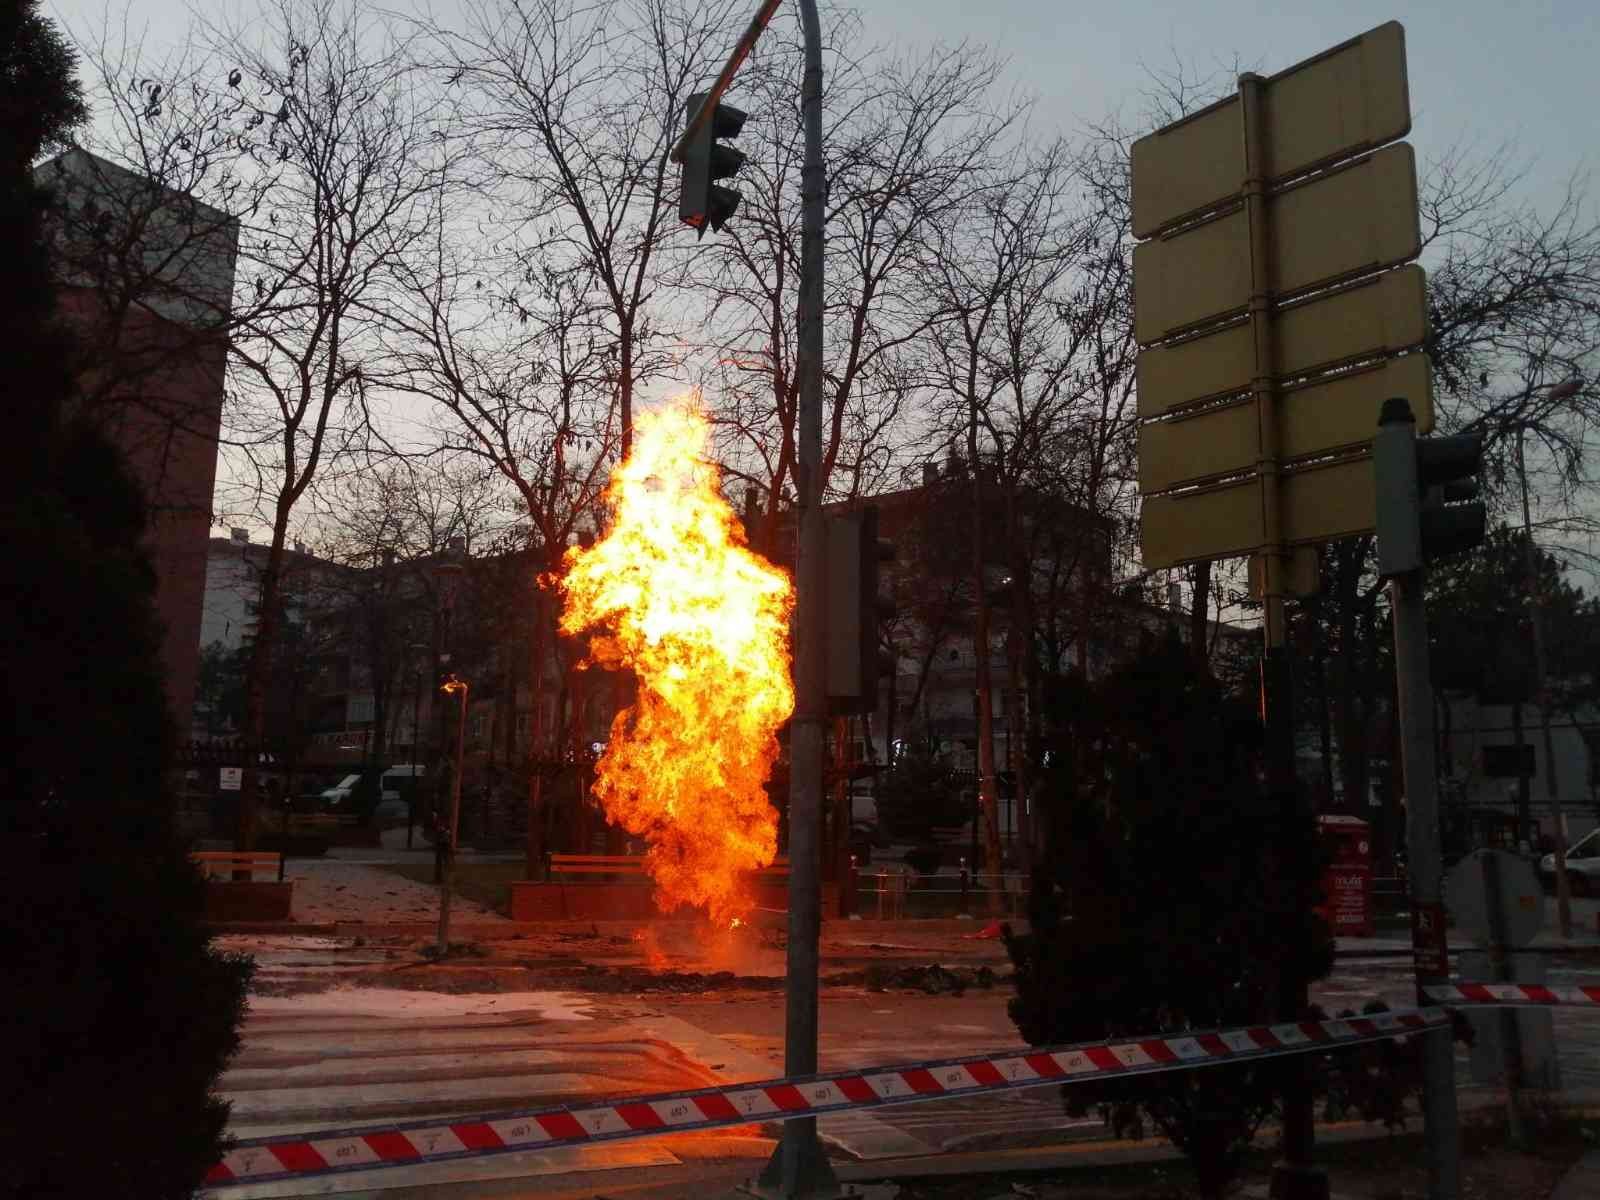 Başkent’te doğalgaz borusu patladı #ankara